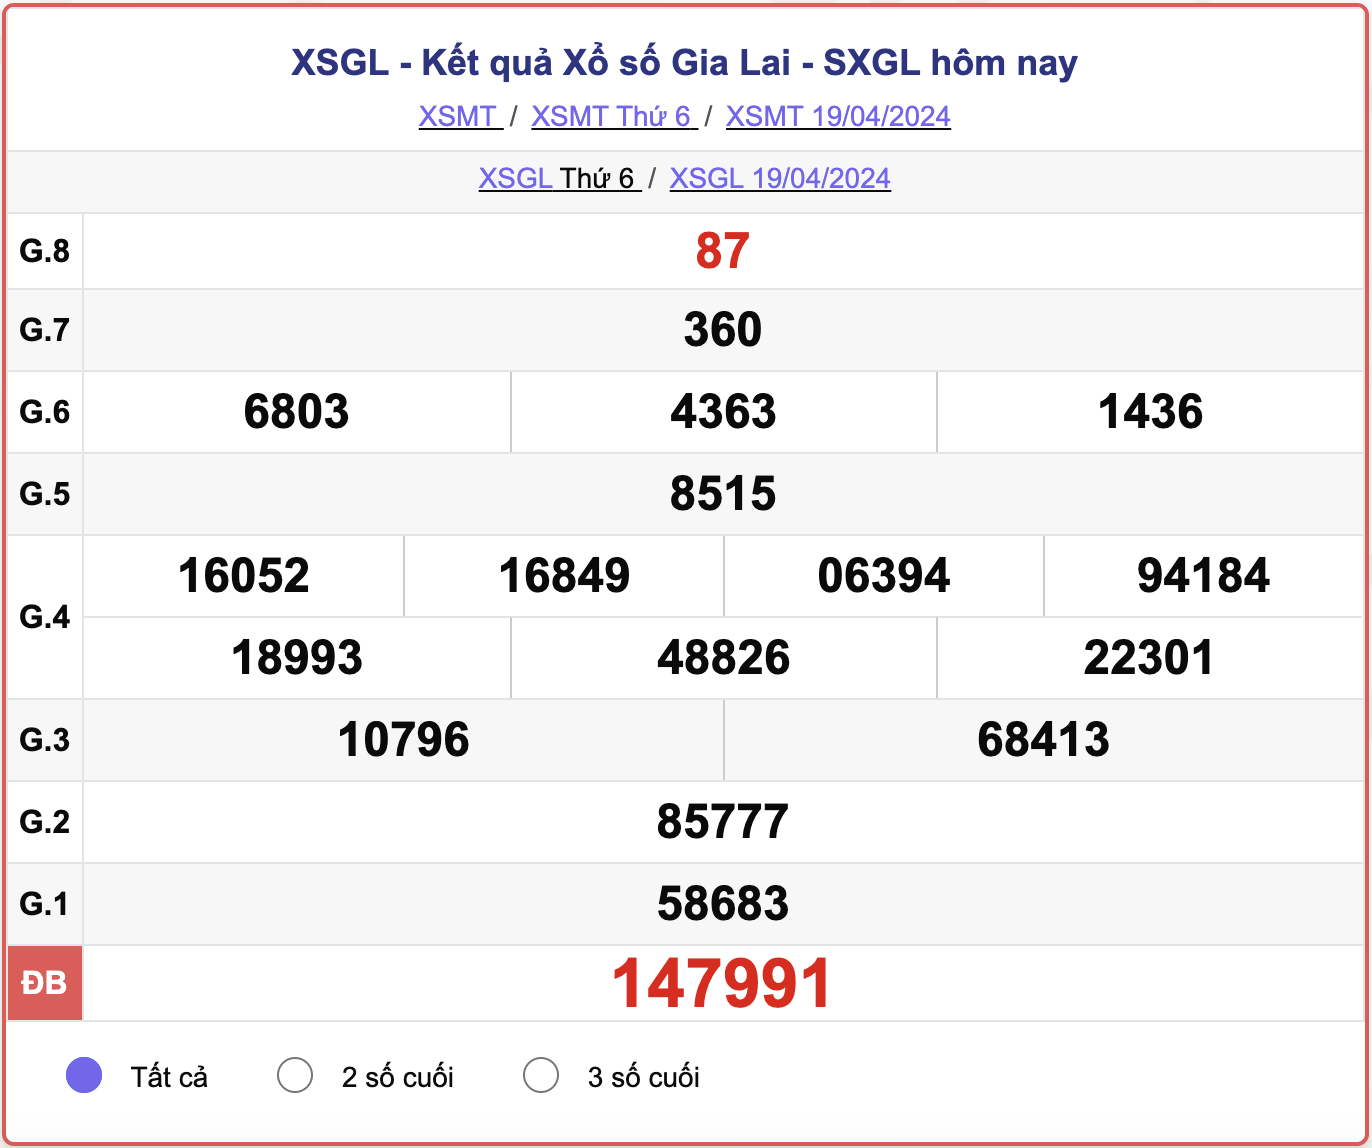 XSGL thứ 6, kết quả xổ số Gia Lai ngày 19/4/2024.